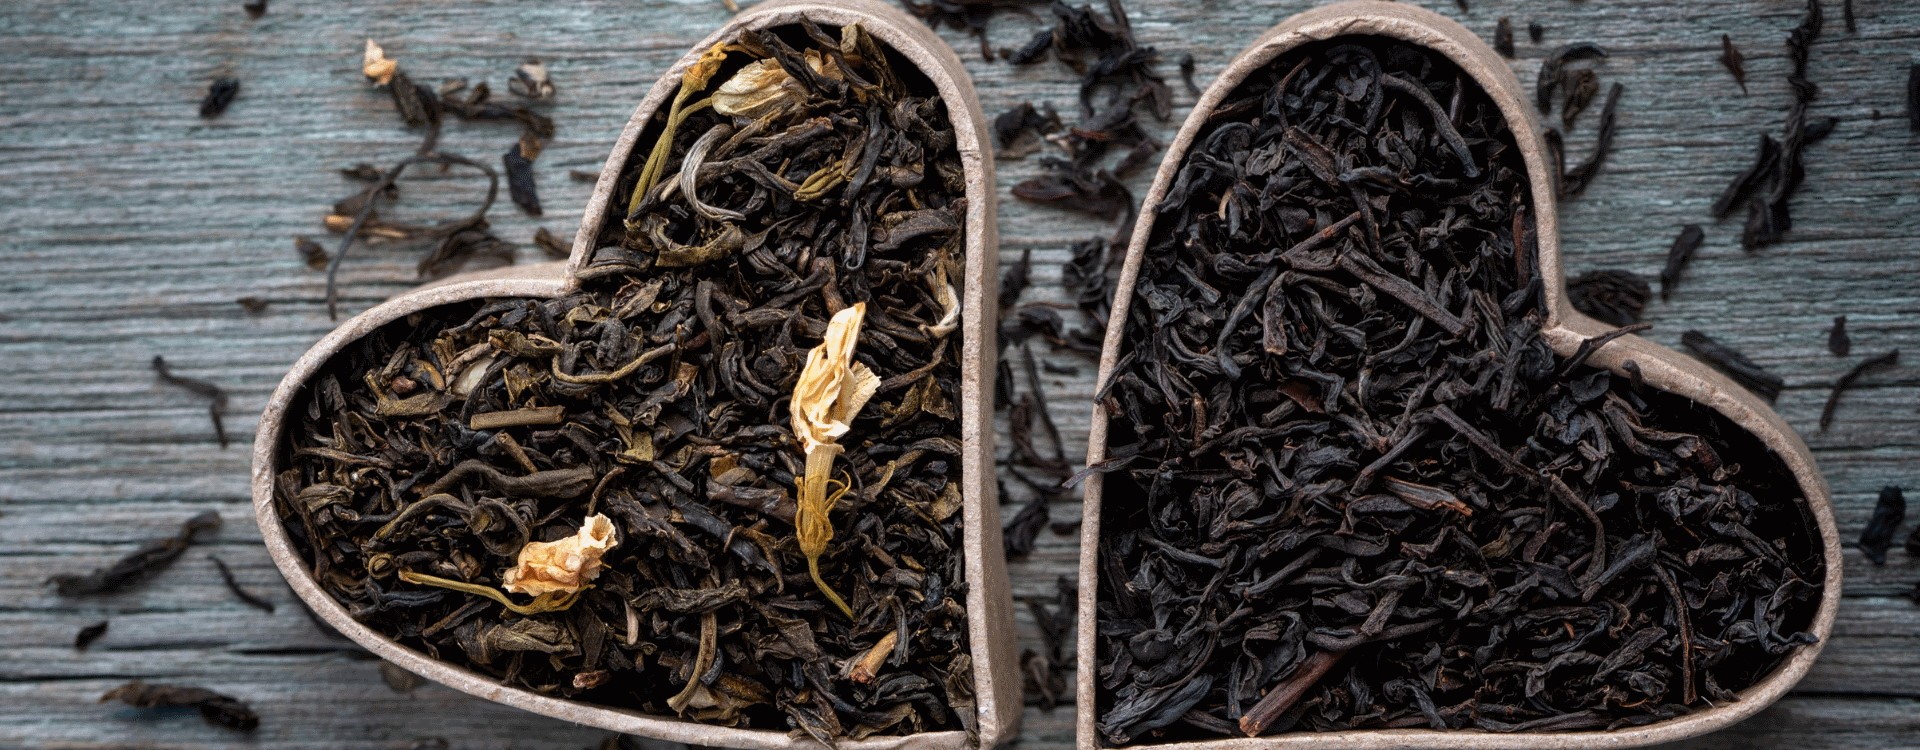 Chá Verde vs. Chá Preto: As Diferenças e Benefícios para a Saúde